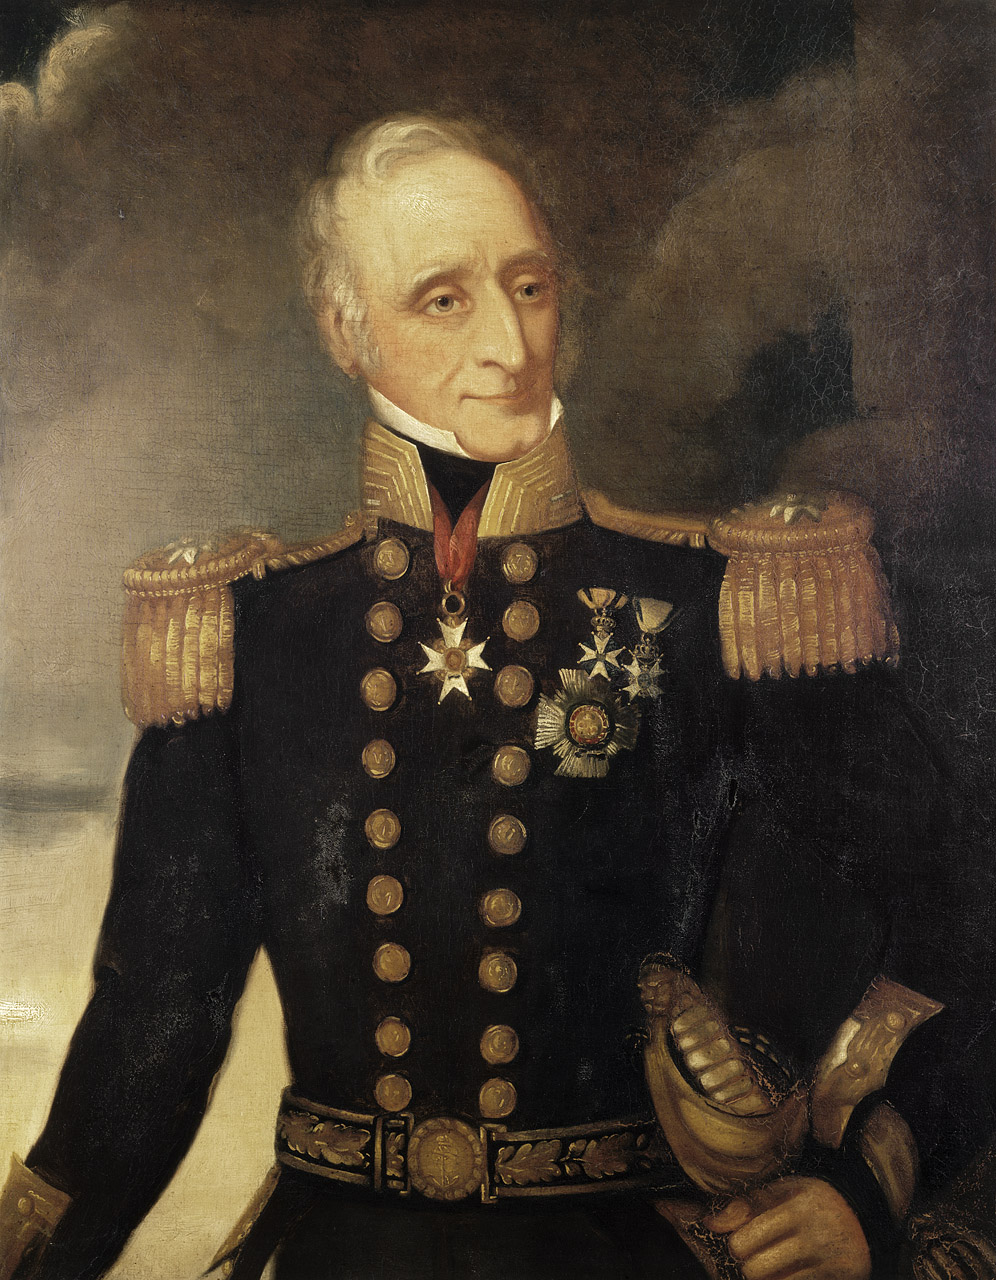 Porträtt av Thomas Baker iförd mörk uniform med metallknappar och epåletter.